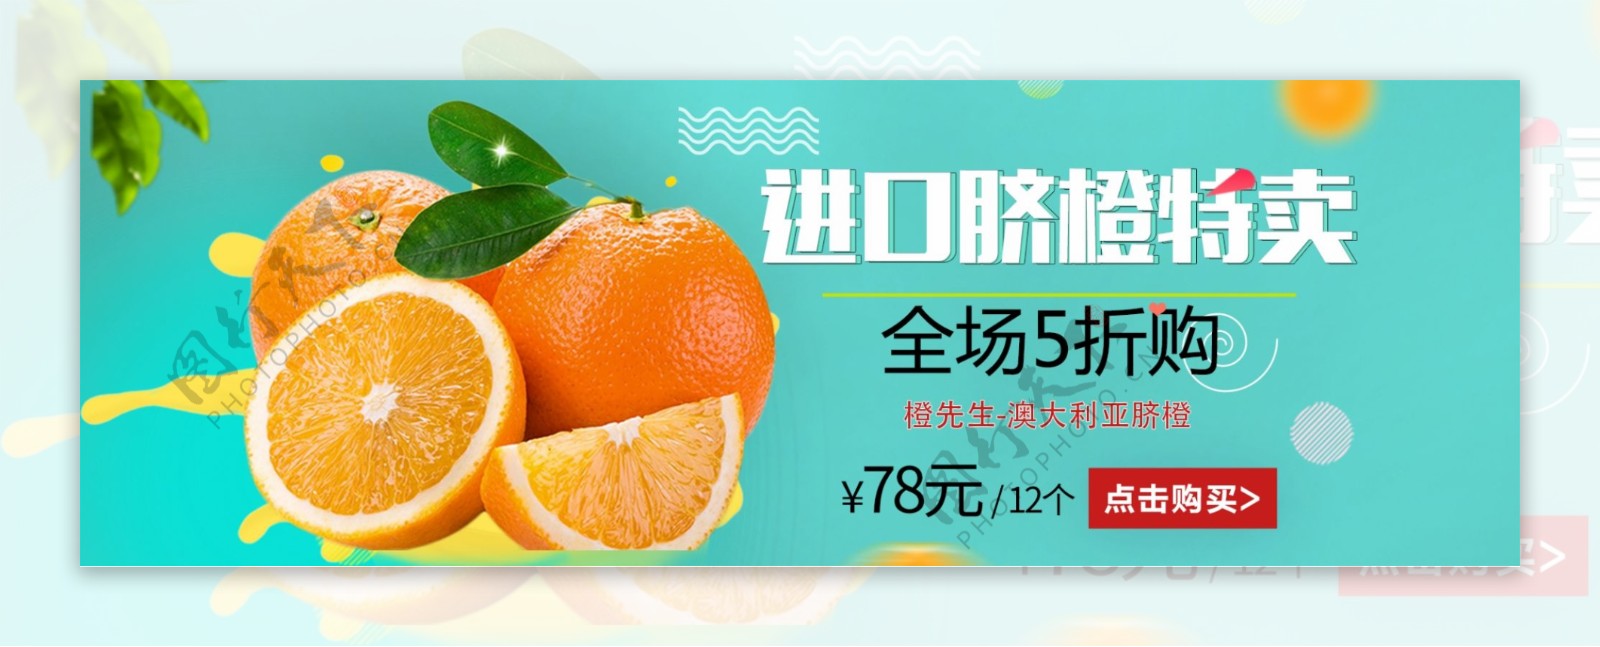 淘宝进口脐橙特卖促销banner